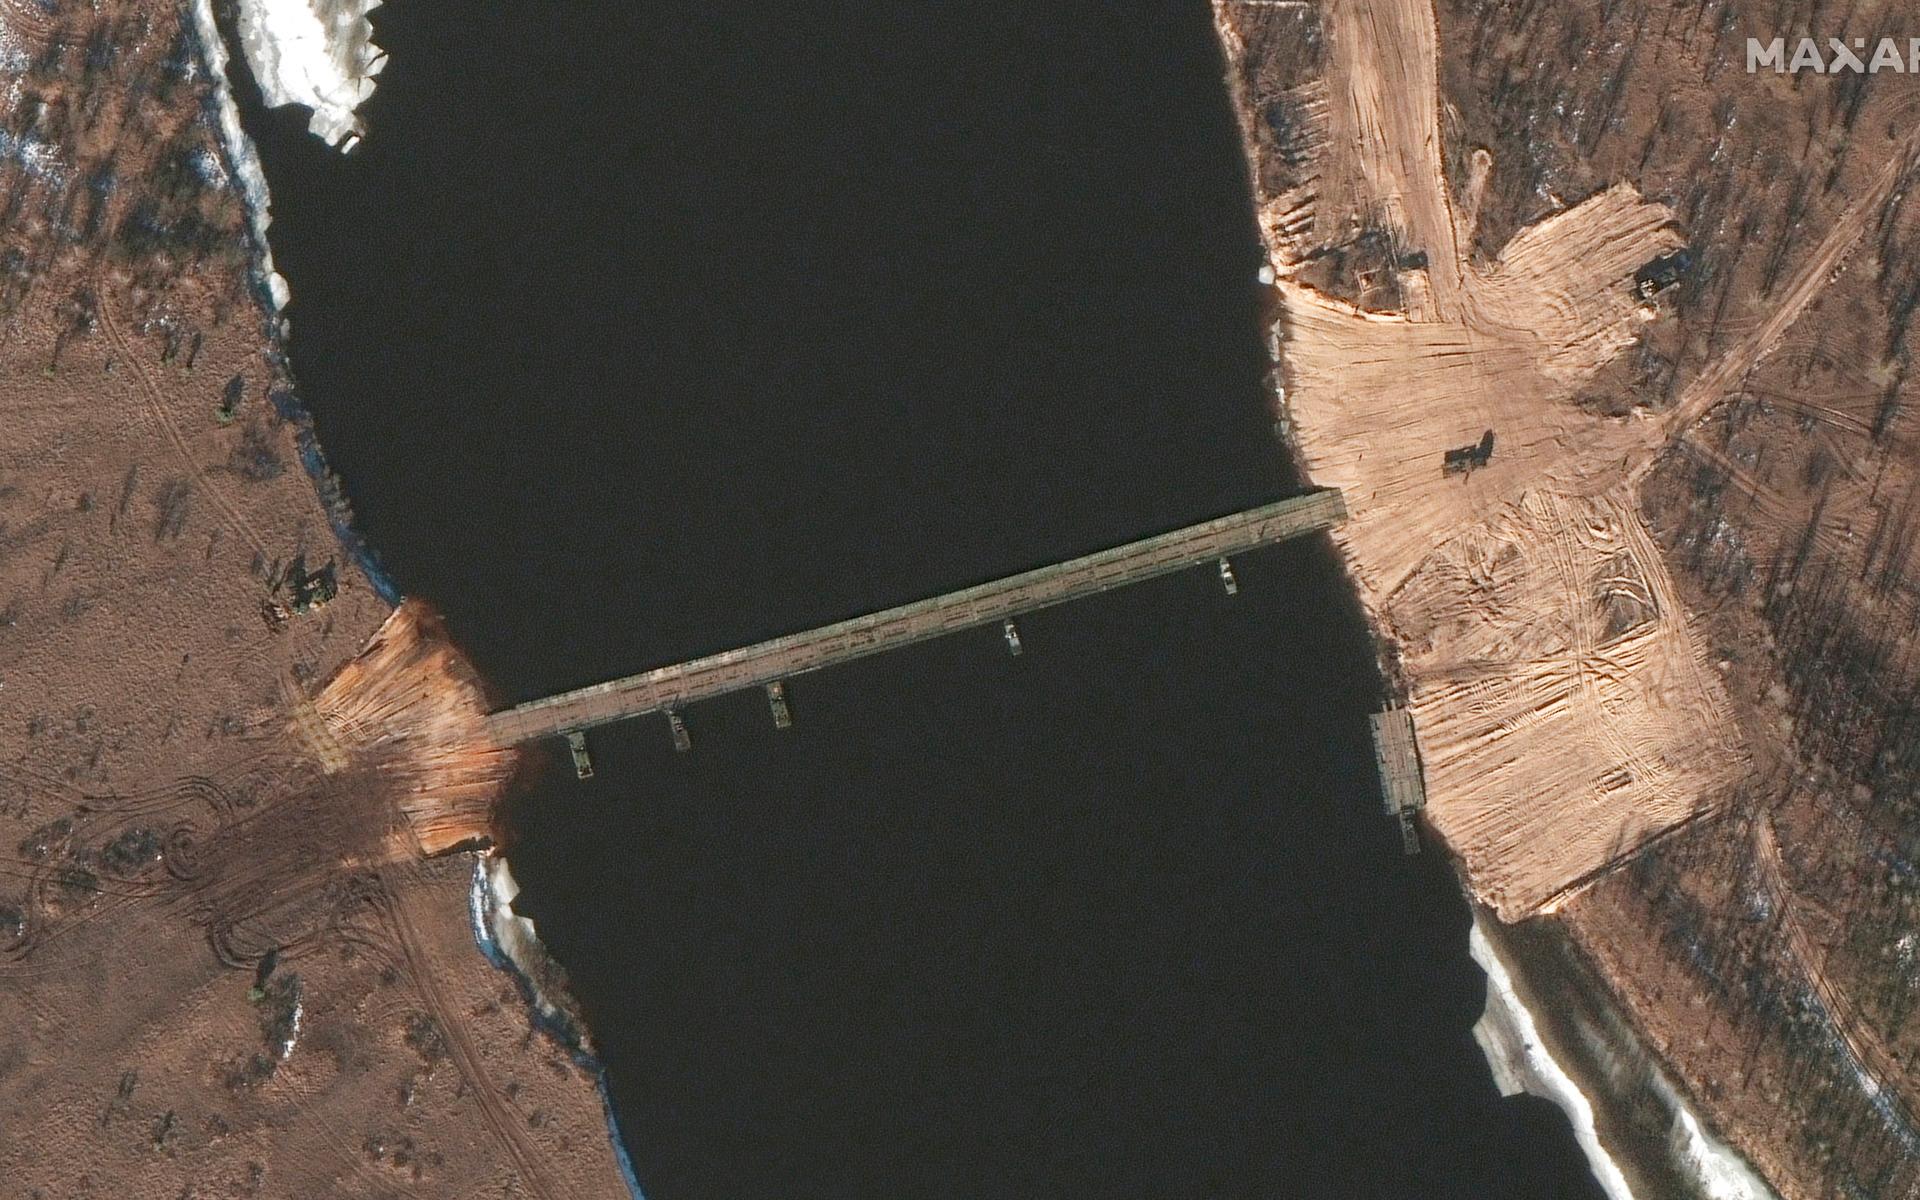 Den nyligen uppförda bron bedöms vara cirka 170-180 meter lång. 